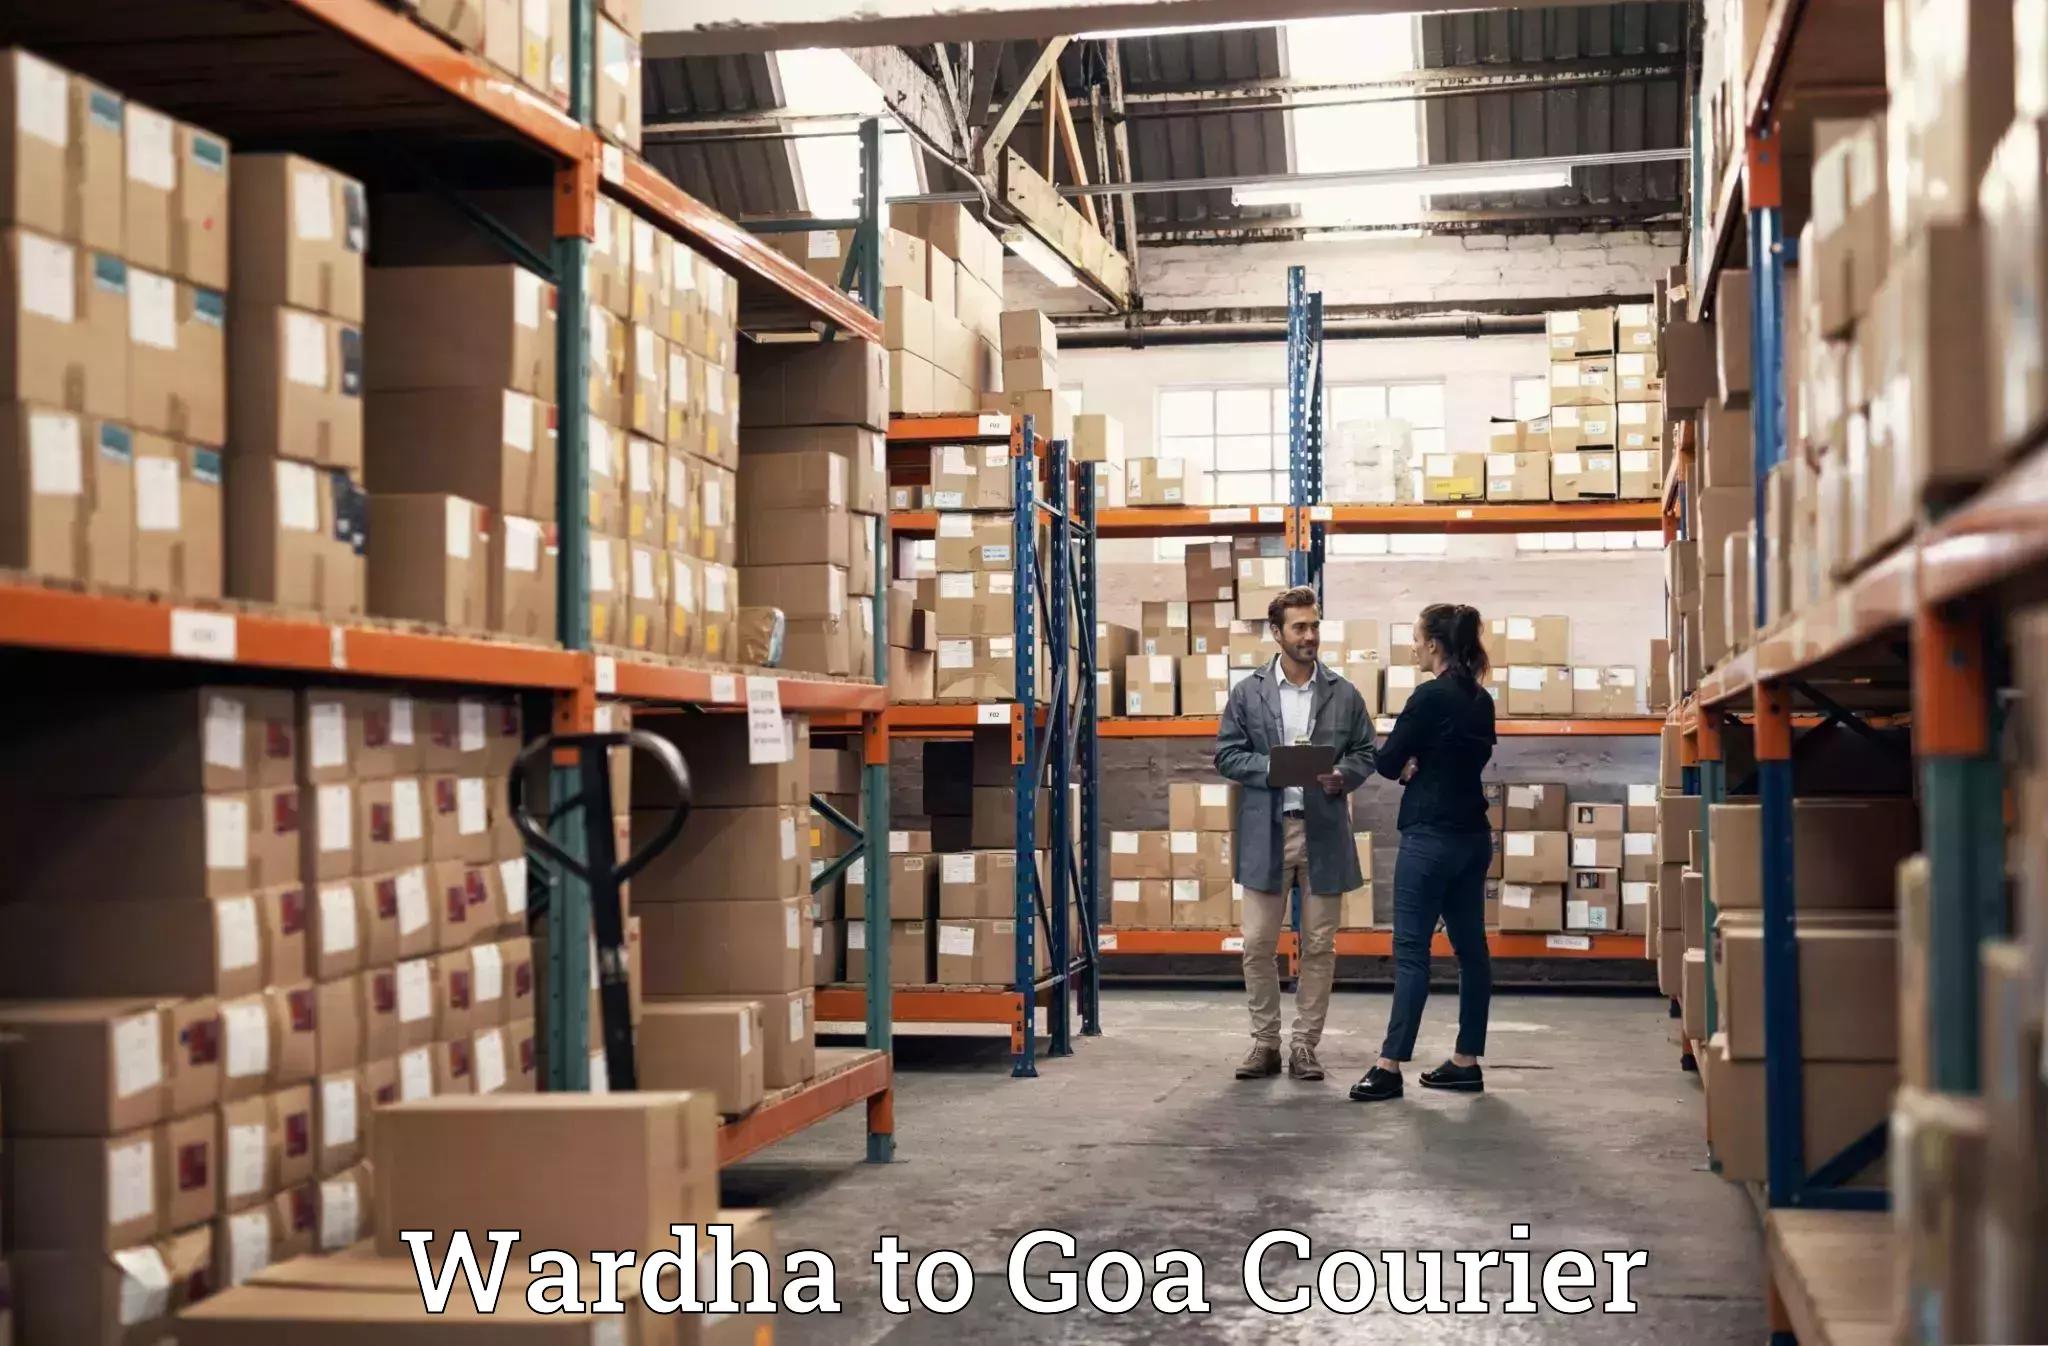 Baggage transport scheduler Wardha to Goa